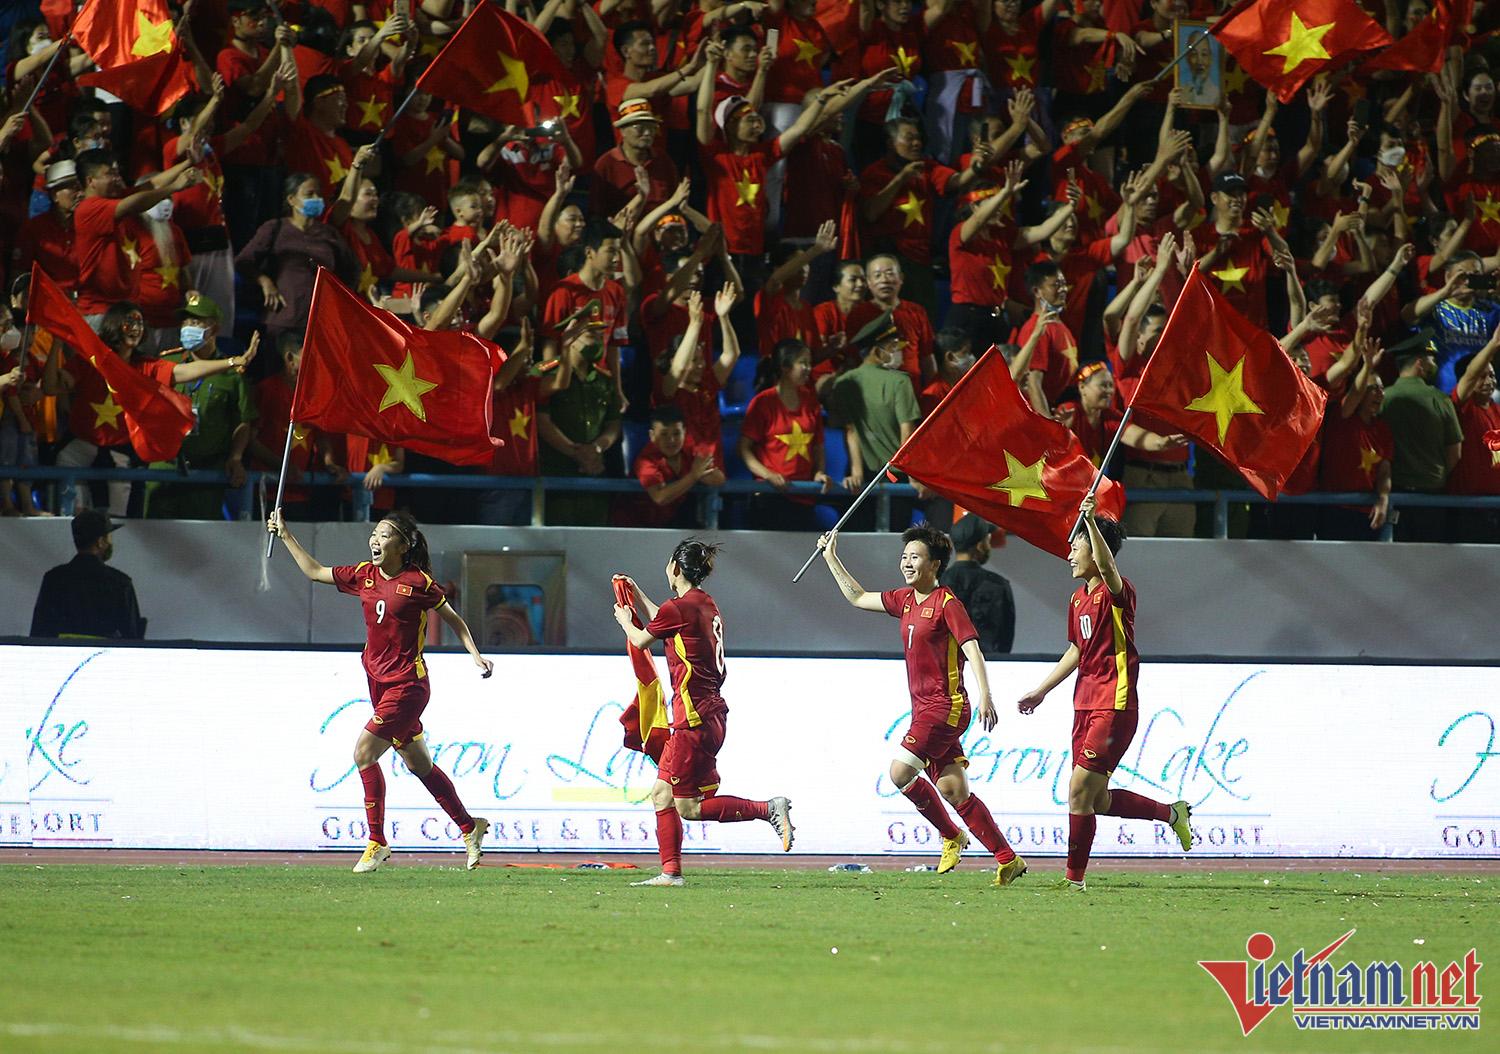 Xúc động hình ảnh cầu thủ nữ Việt Nam cắm cờ Tổ quốc trên bục nhận ...